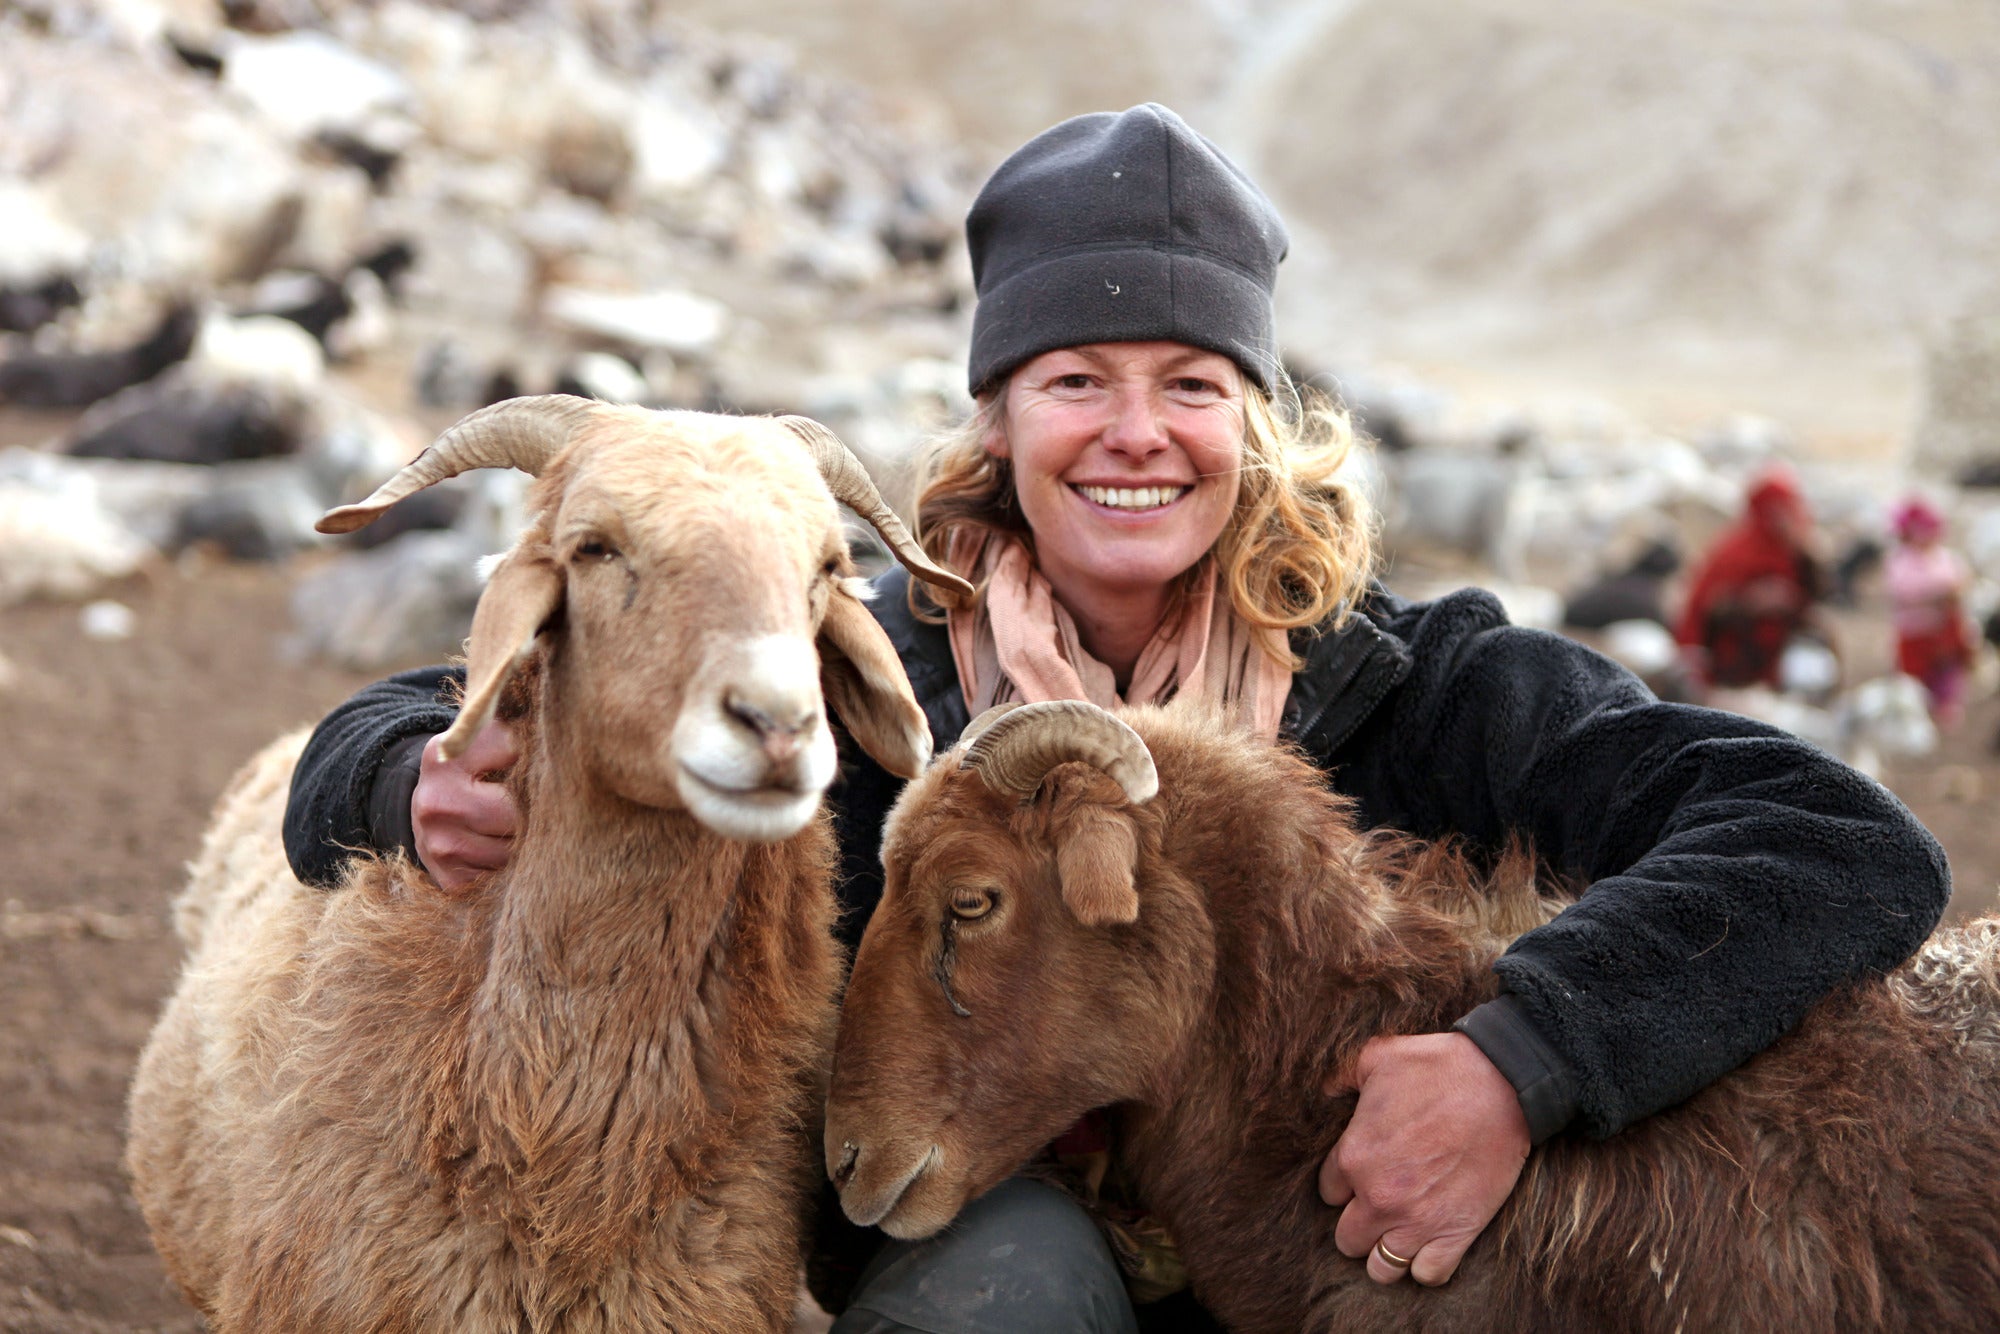 Wild Shepherdess with Kate Humble